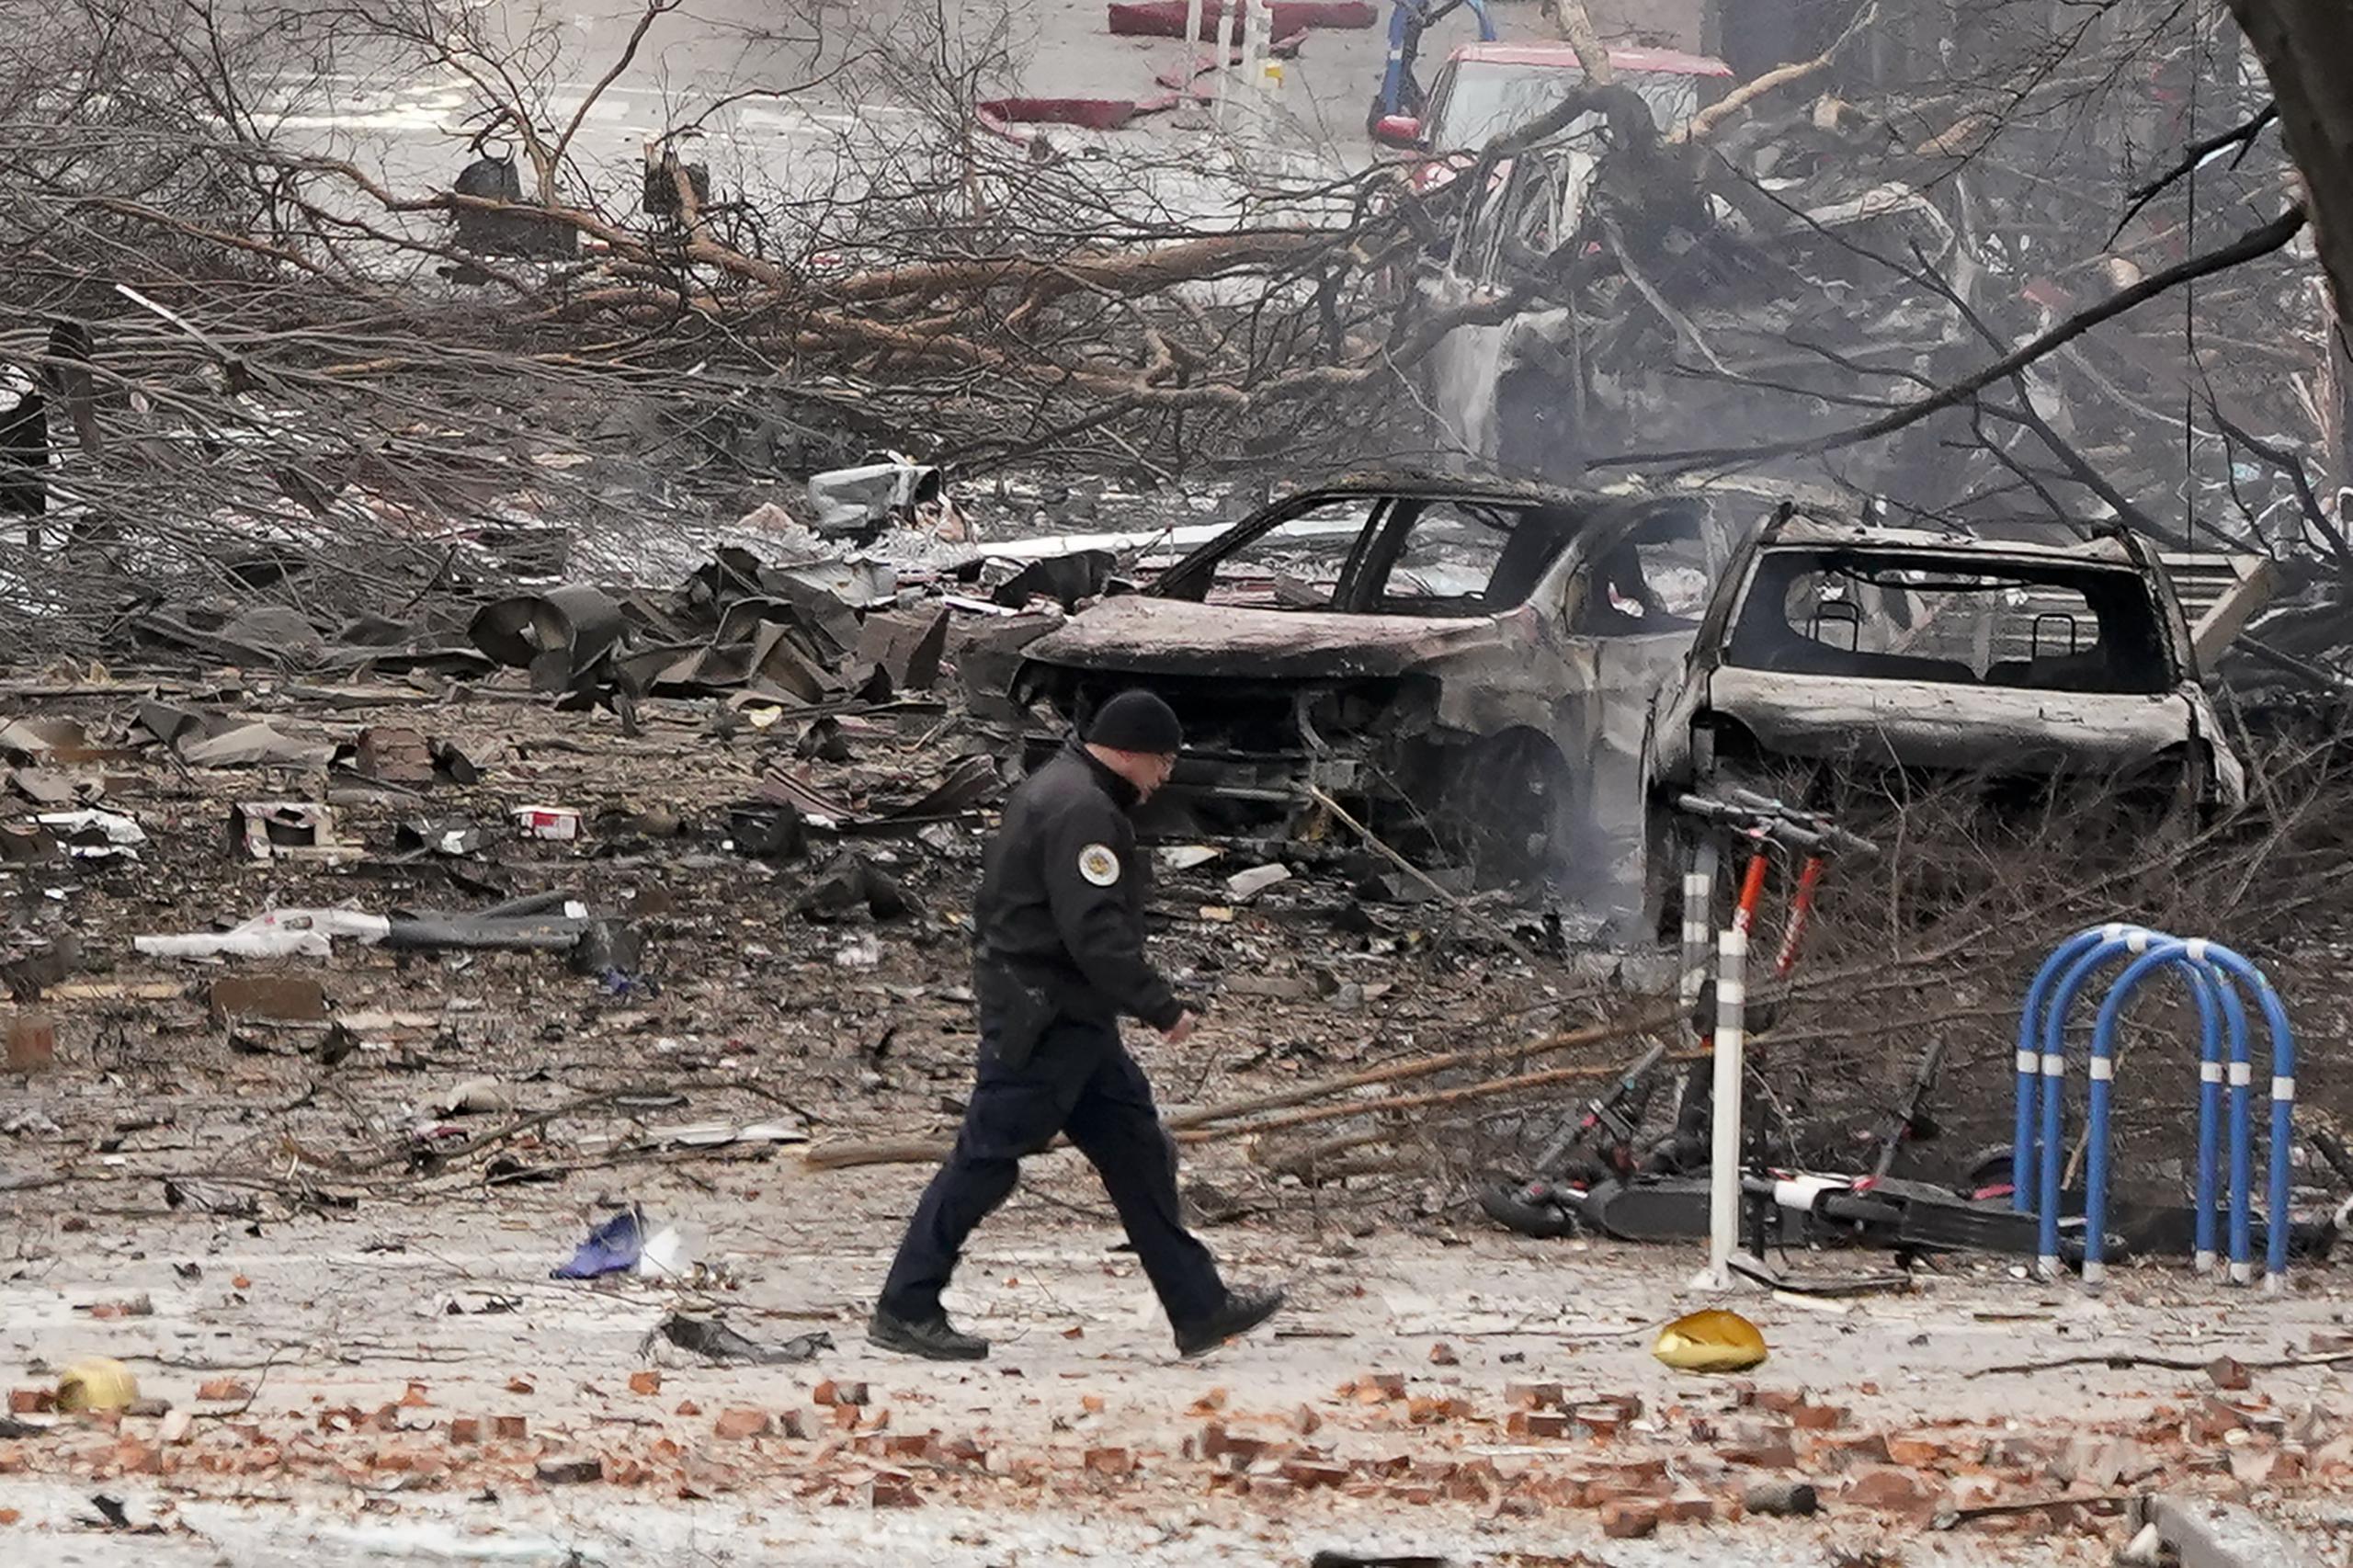 Antes de la explosión, del interior del vehículo se escuchó una grabación que advertía que pronto estallaría una bomba.